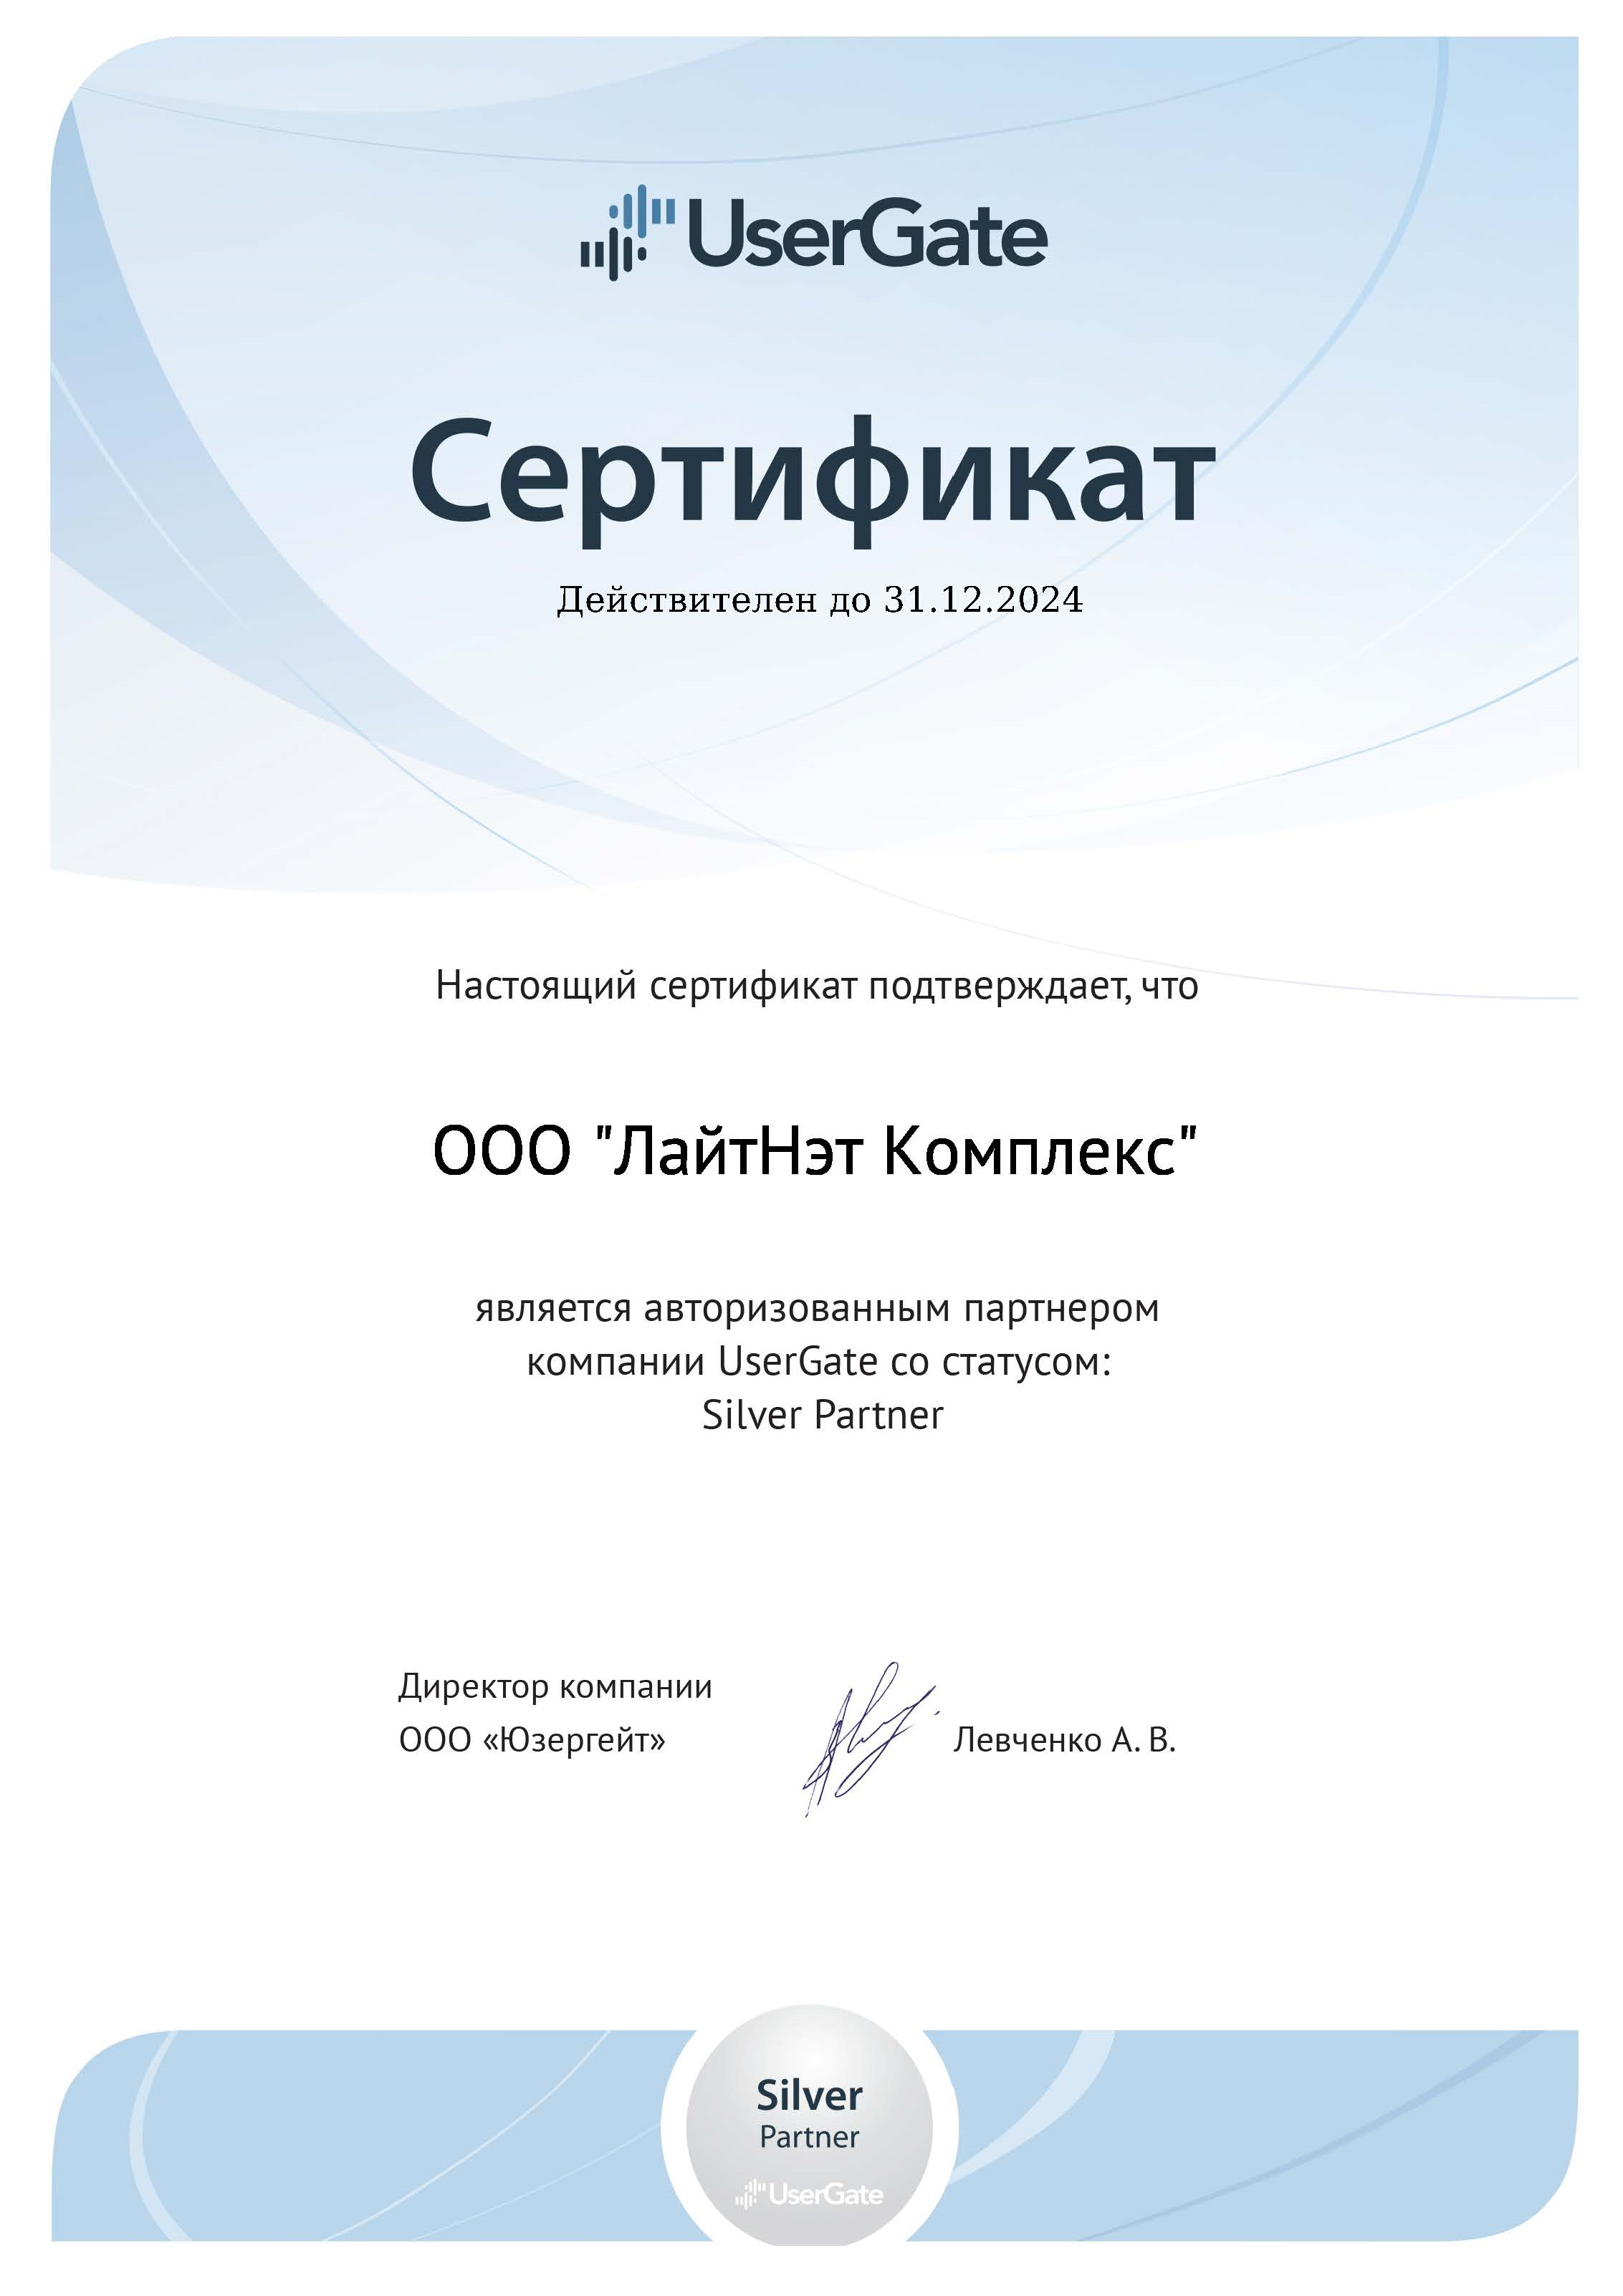 UserGate - сертифицированный партнер 2024